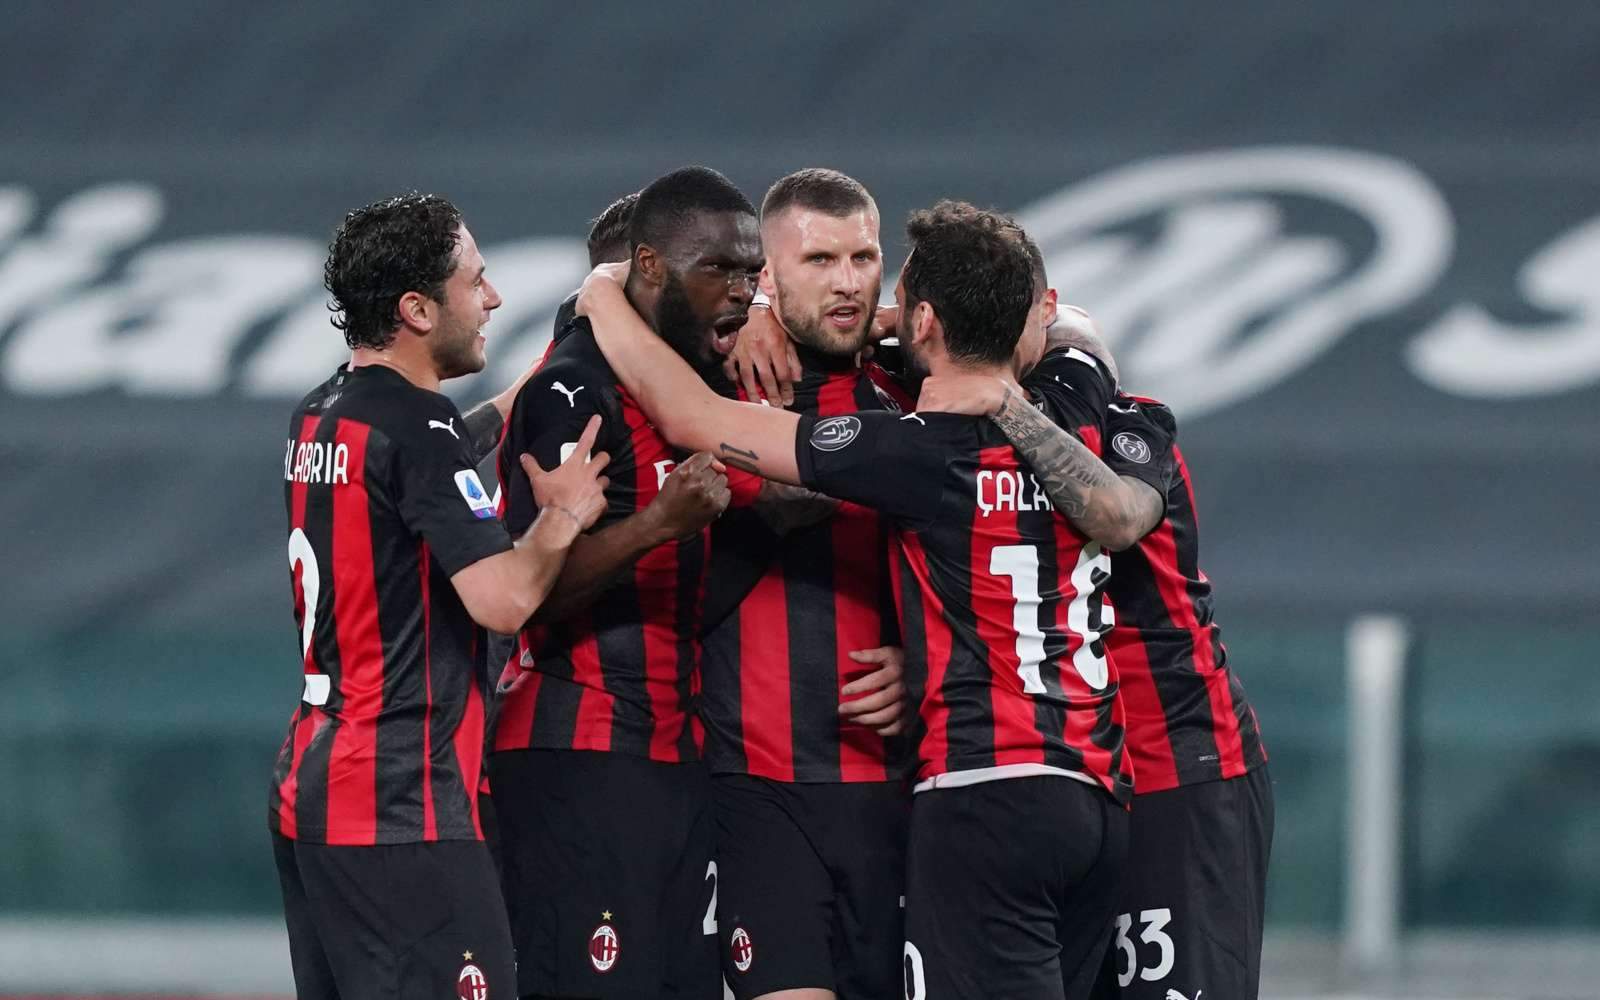 «Хорошее начало» - Сакки прокомментировал первый матч «Милана»